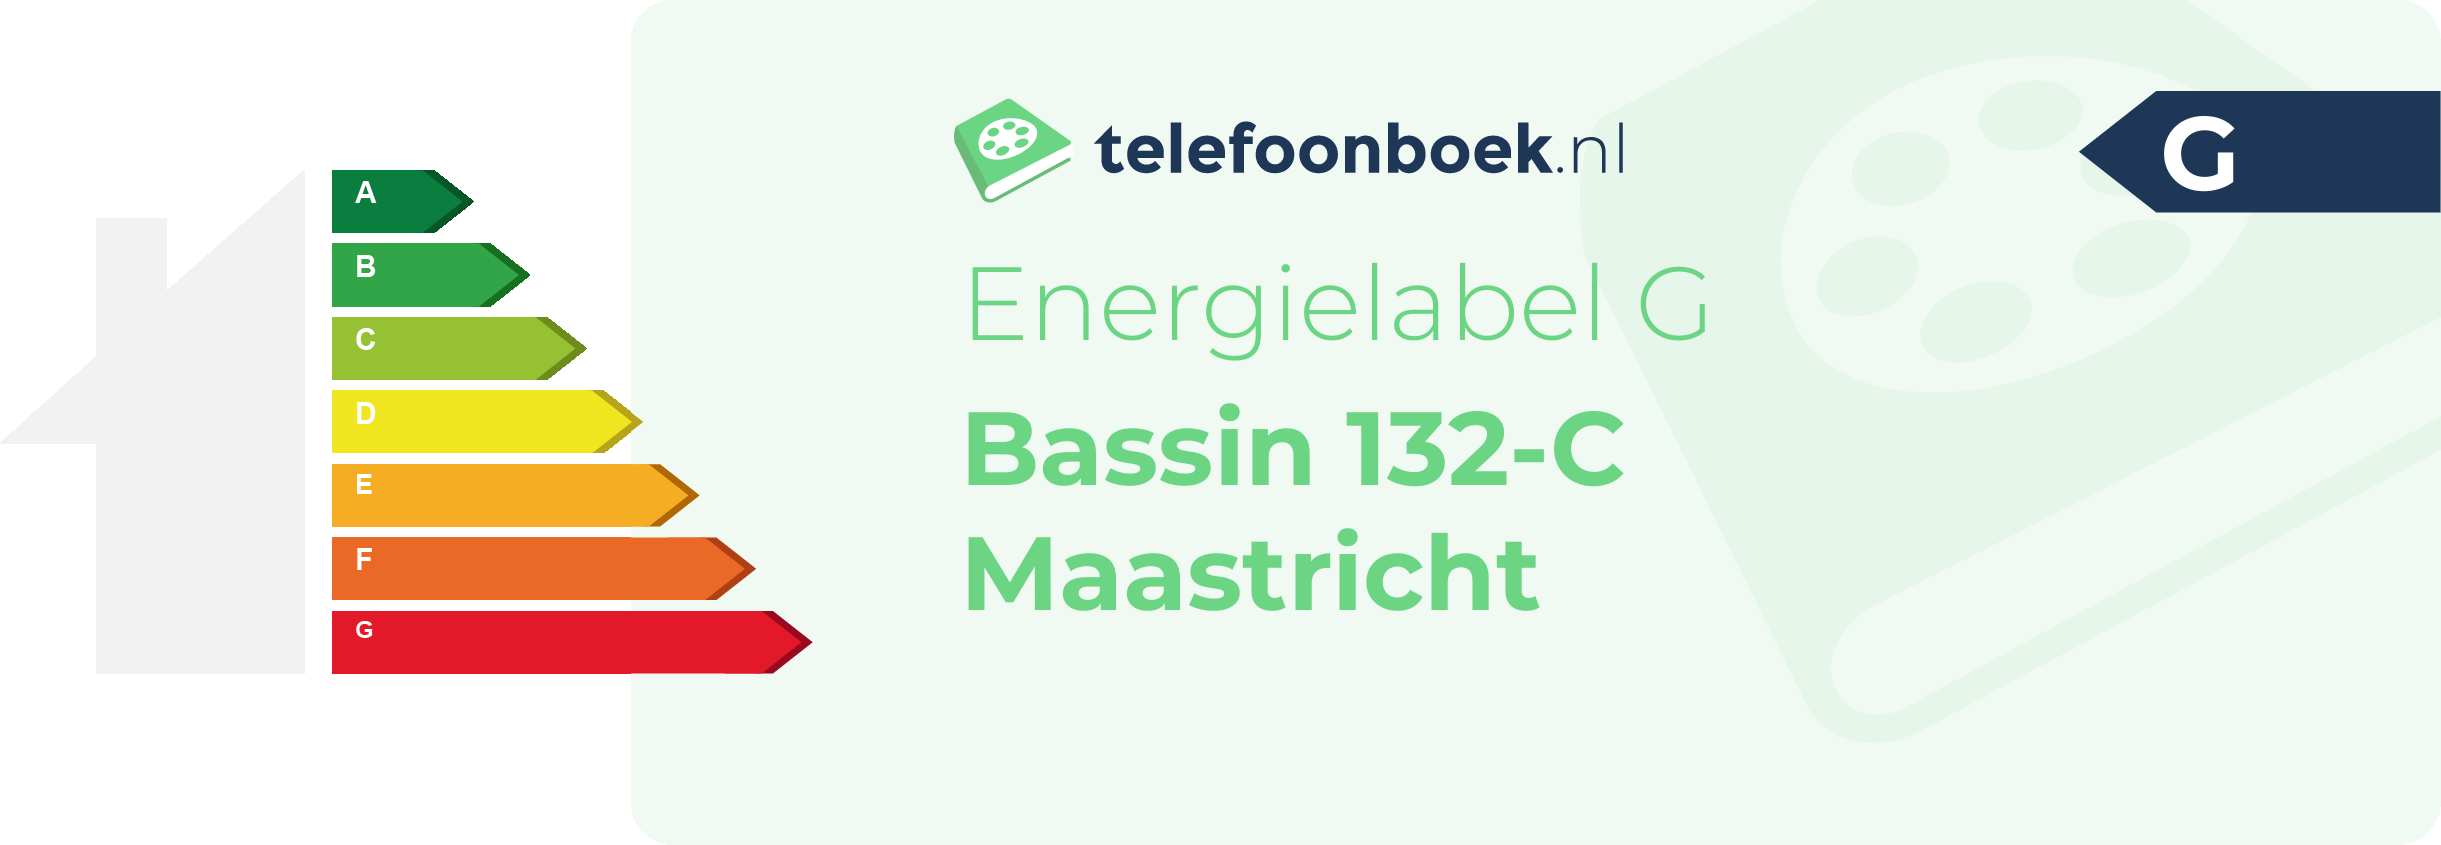 Energielabel Bassin 132-C Maastricht